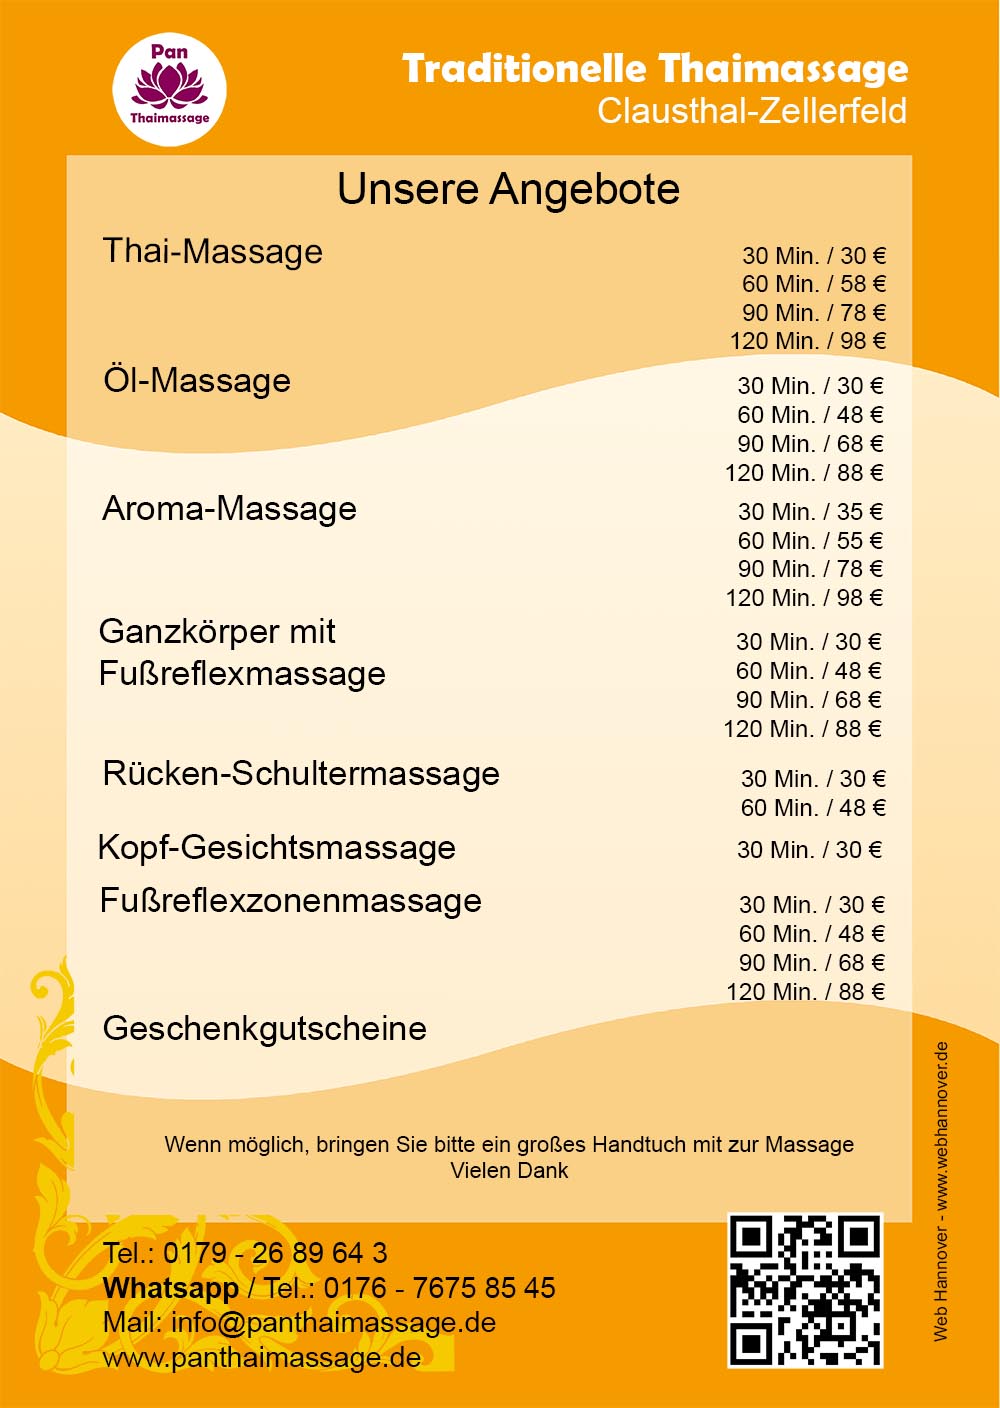 thaimassage,clausthal,zellerfeld,thai,massage,wellnesszentrum,naturheilkunde,aromatherapie,oelmassage,aromamassage,ganzkoerpermassage,fußreflexmassage,rueckenmassage,schultermassage,kopfmassage,gesichtsmassage,fußreflexzonenmassage,massagegutschein